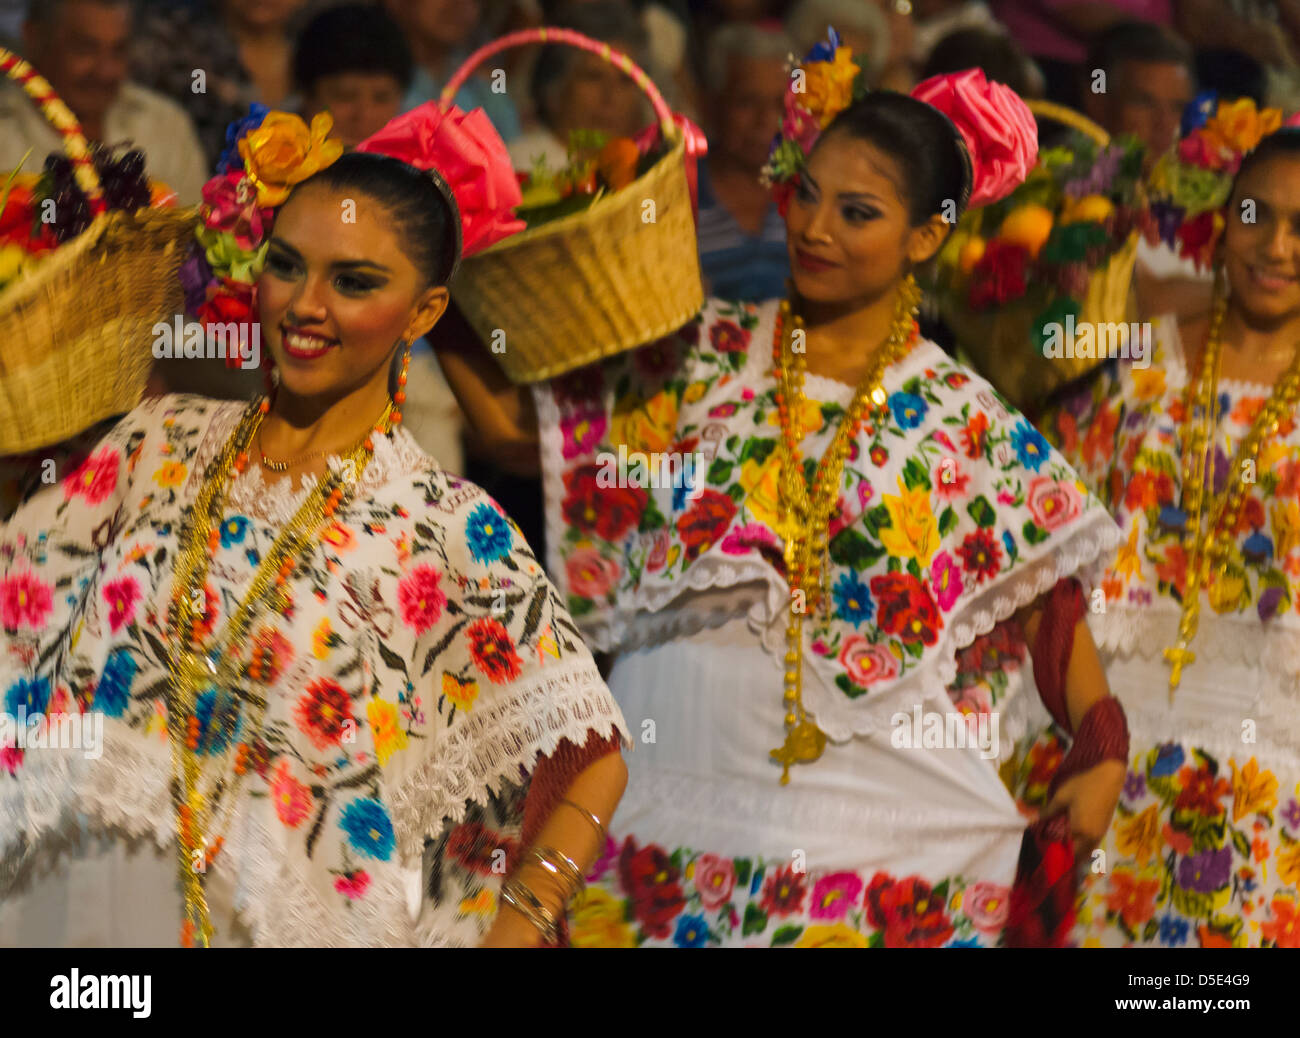 Ragazze messicano nel tradizionale abito ricamato, Merida, Yucatan Stato, Messico Foto Stock